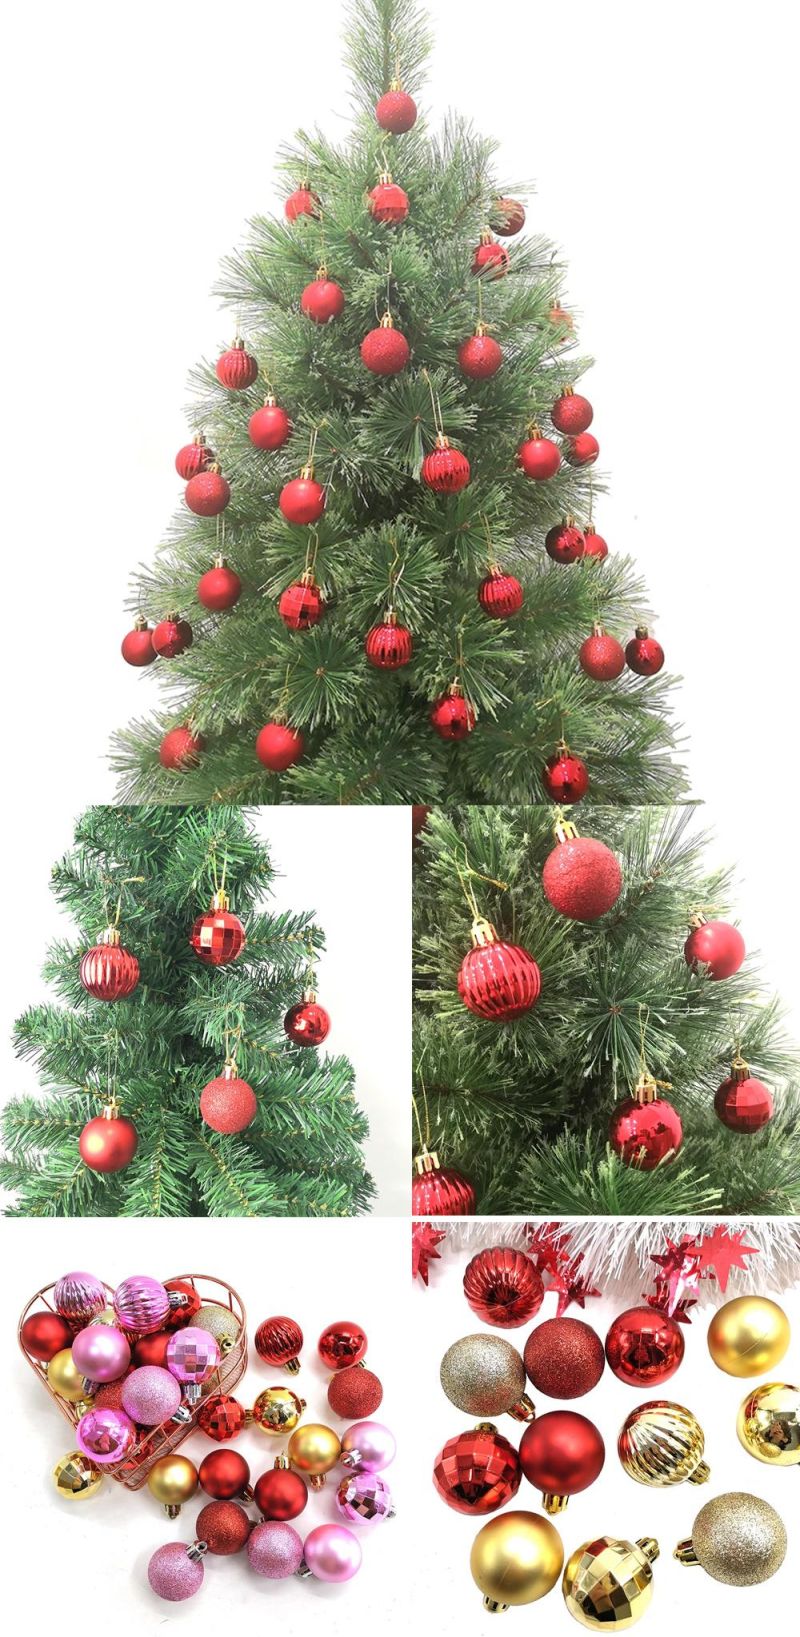 Customized Mix Color Christmas Ball Christmas Ornament Ball for Christmas Tree Decoration